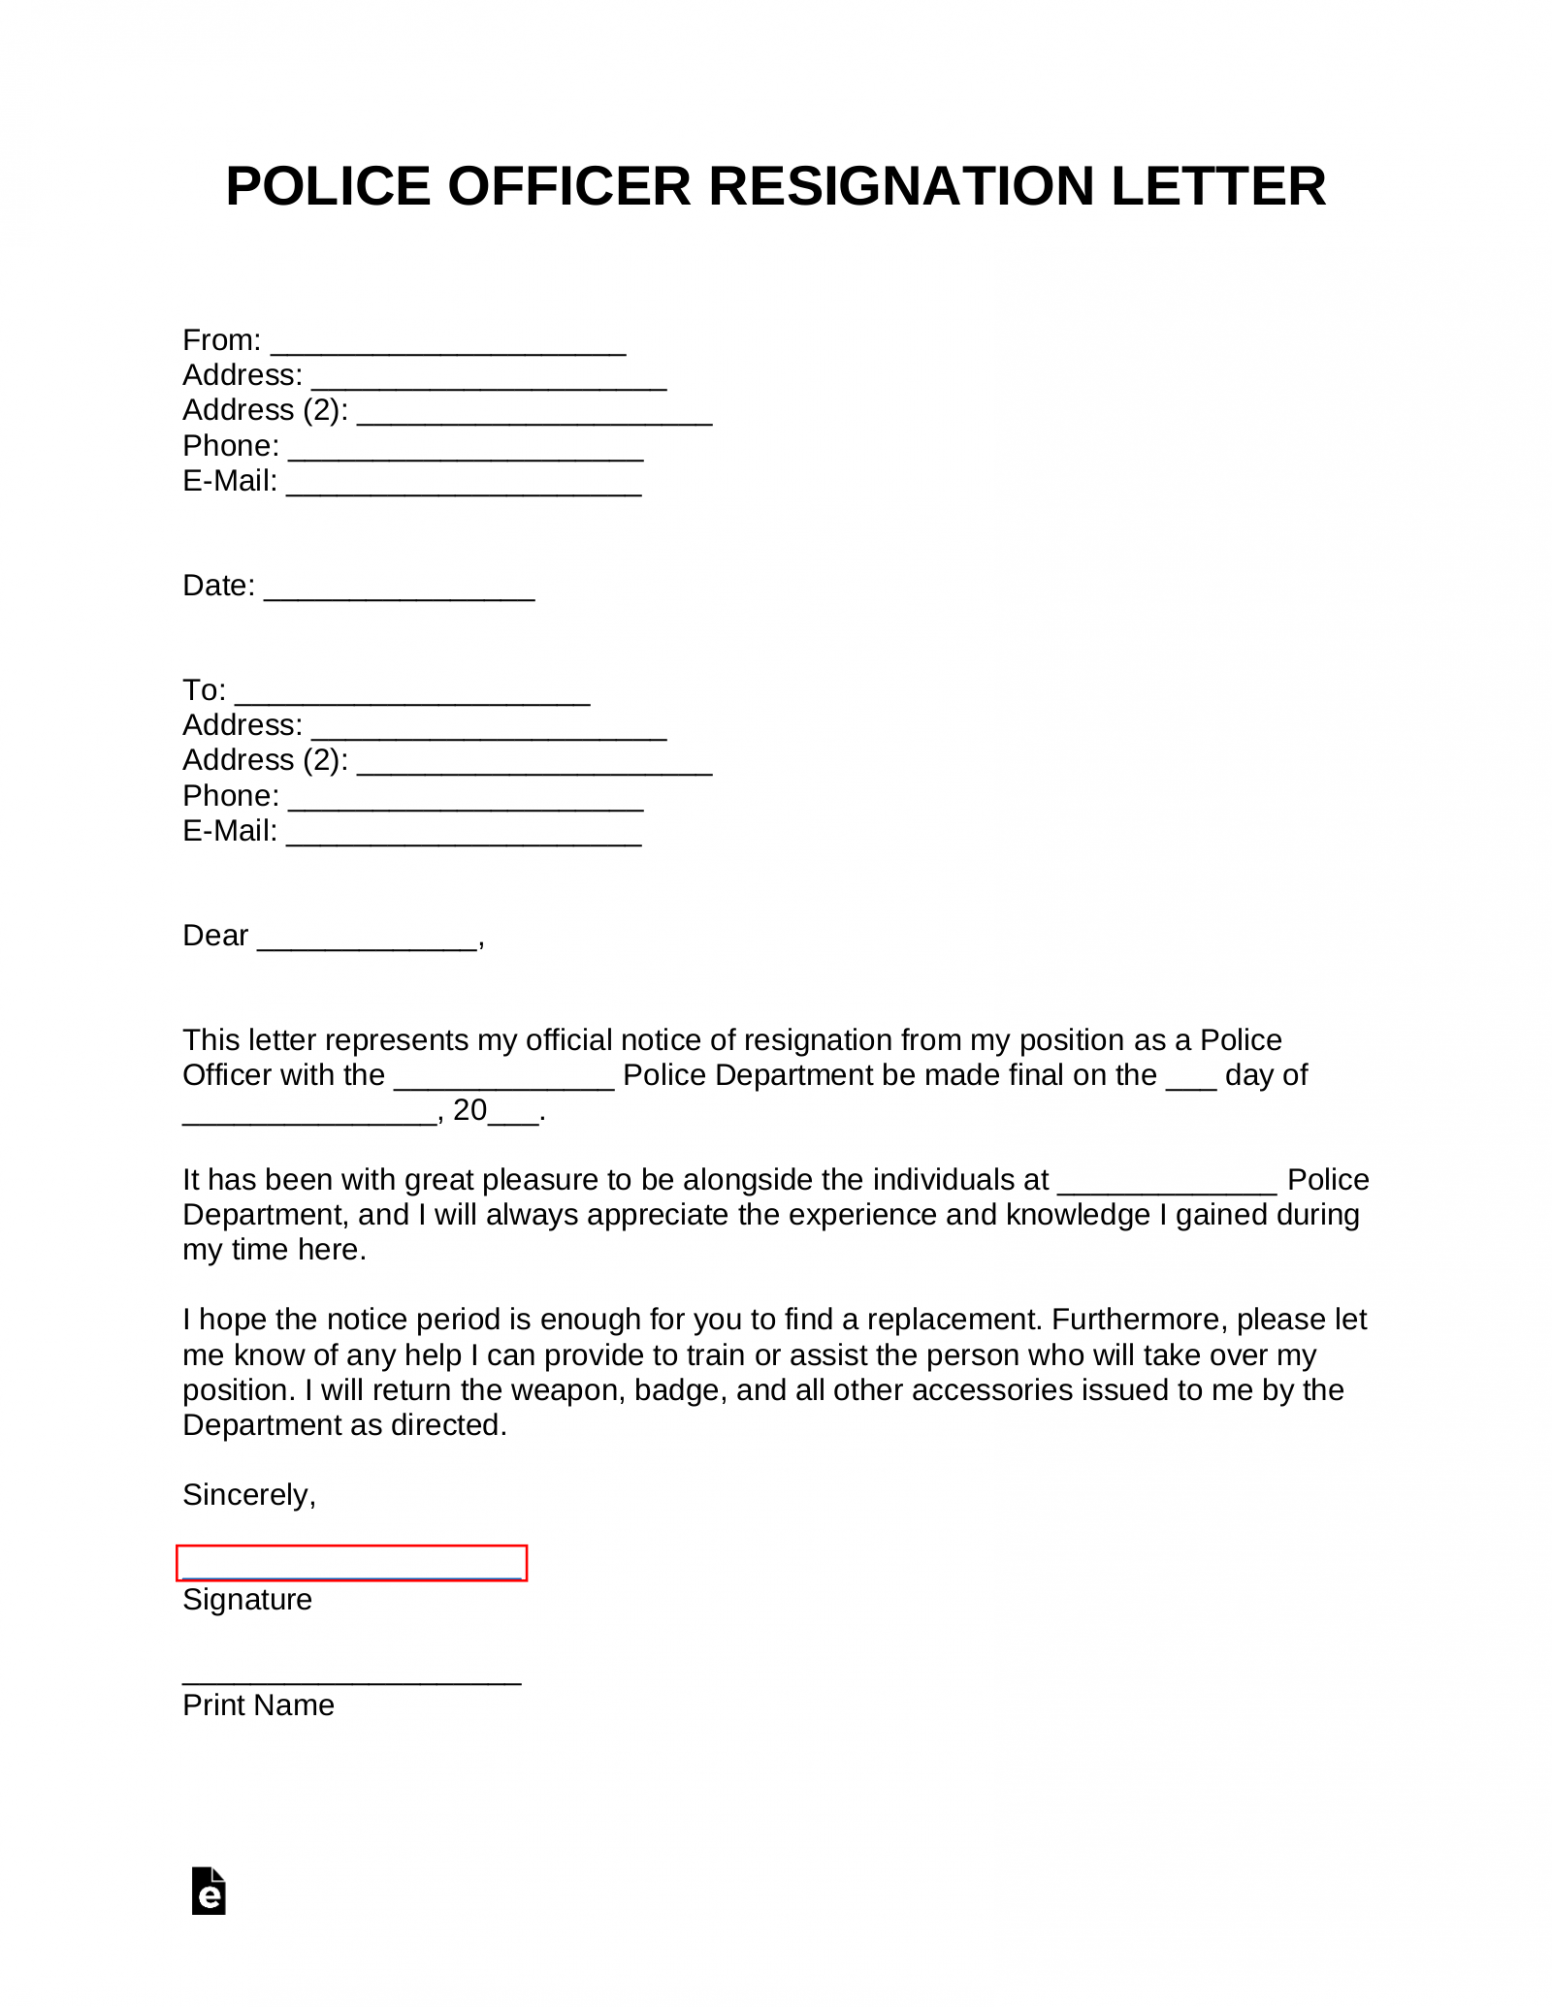  Officer Resignation Letter Template PPT